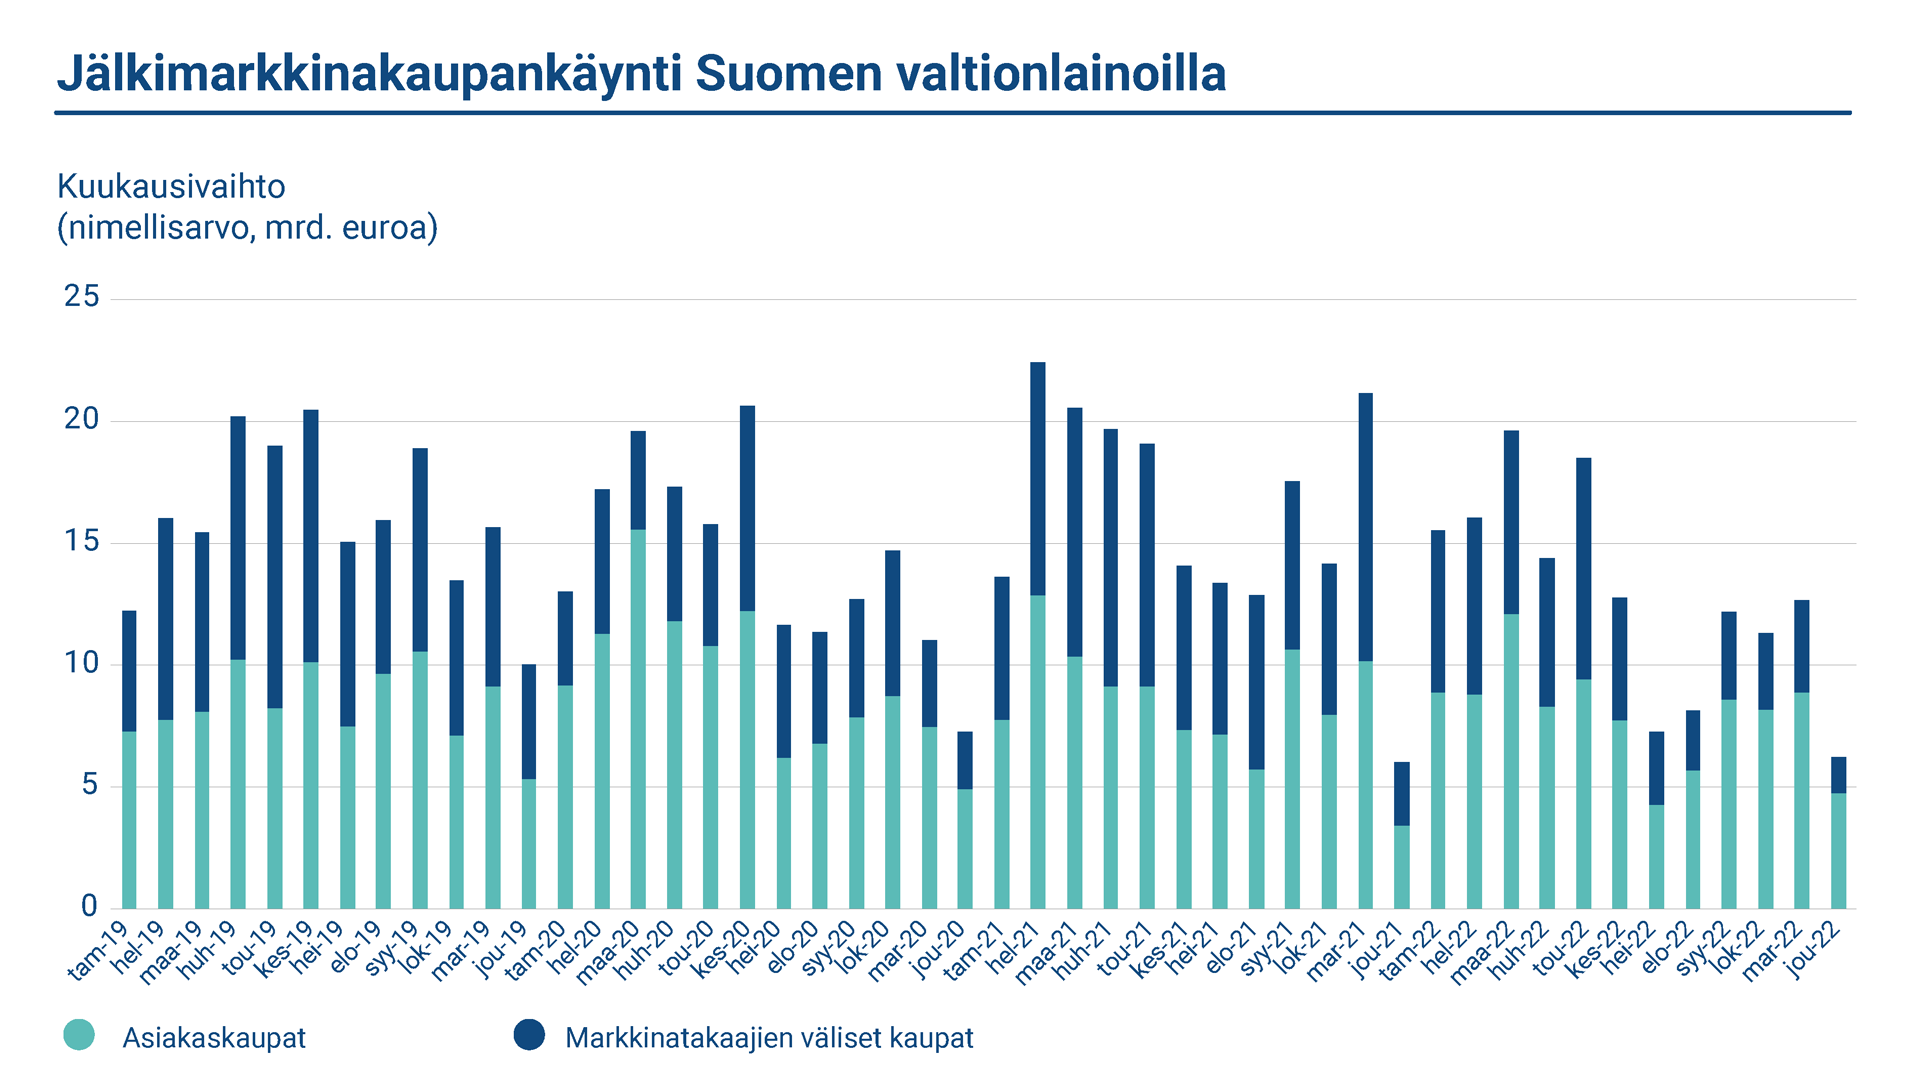 Kaaviossa esitetään jälkimarkkinakaupankäynti Suomen valtionlainoilla vuosina 2018-2021. Viitelainojen nimellismääräinen vaihto markkinatakaajien välisessä kaupassa oli keskimäärin 7,74 miljardia kuussa. Asiakaskaupan keskimääräinen kuukausivaihto oli 8,48 miljardia euroa.